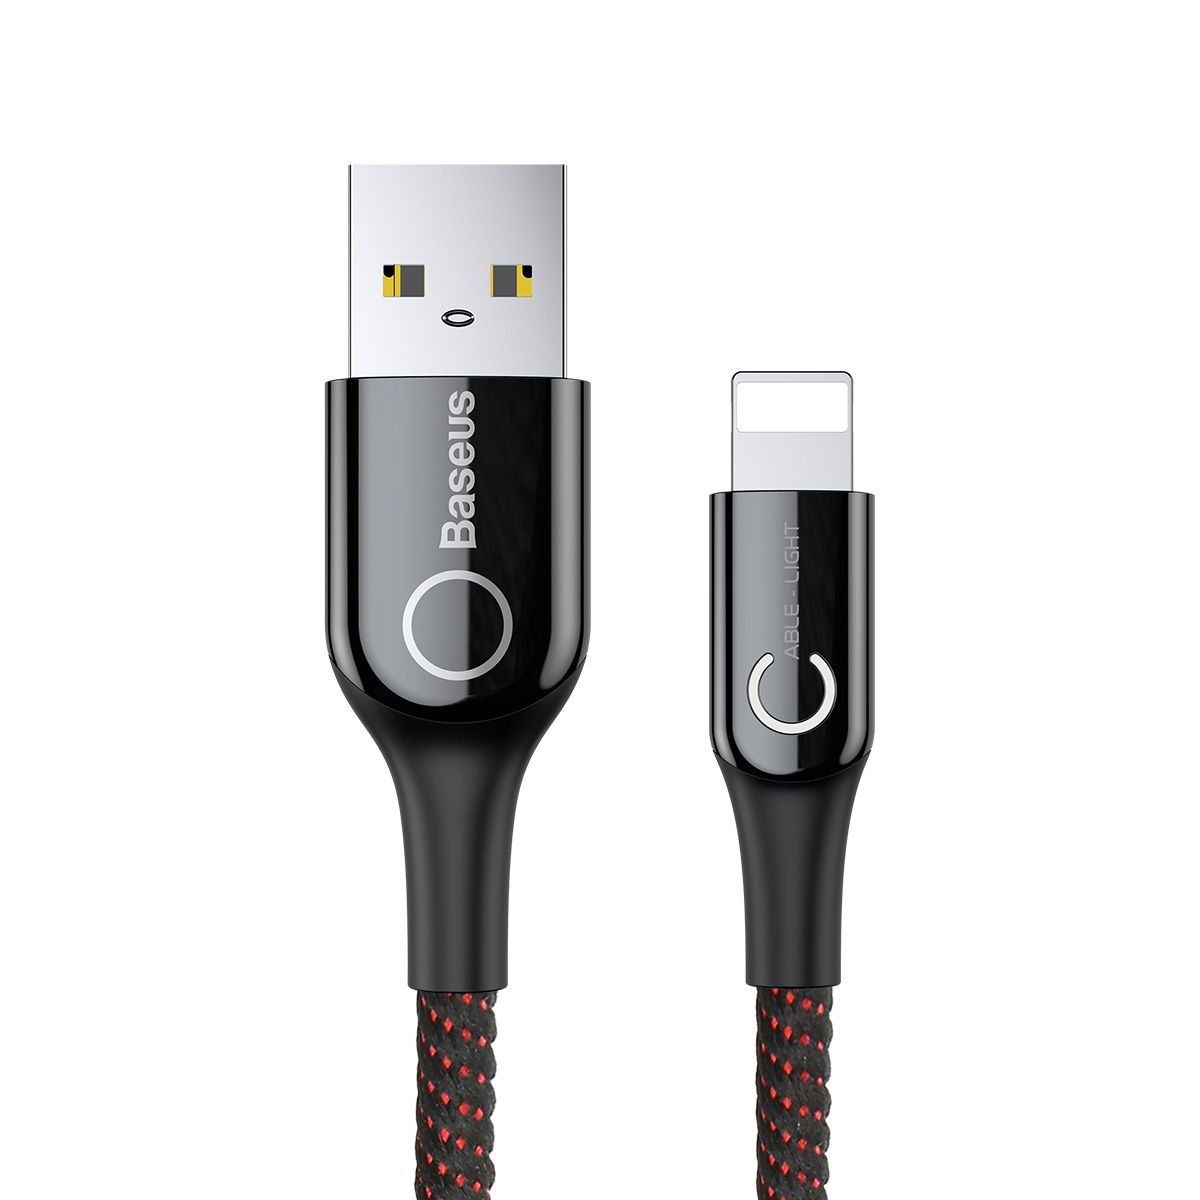 CALCD-01 Кабель Baseus C-shaped USB - Lightning 2.4A (CALCD), цвет- черный+красный, длина - 1м